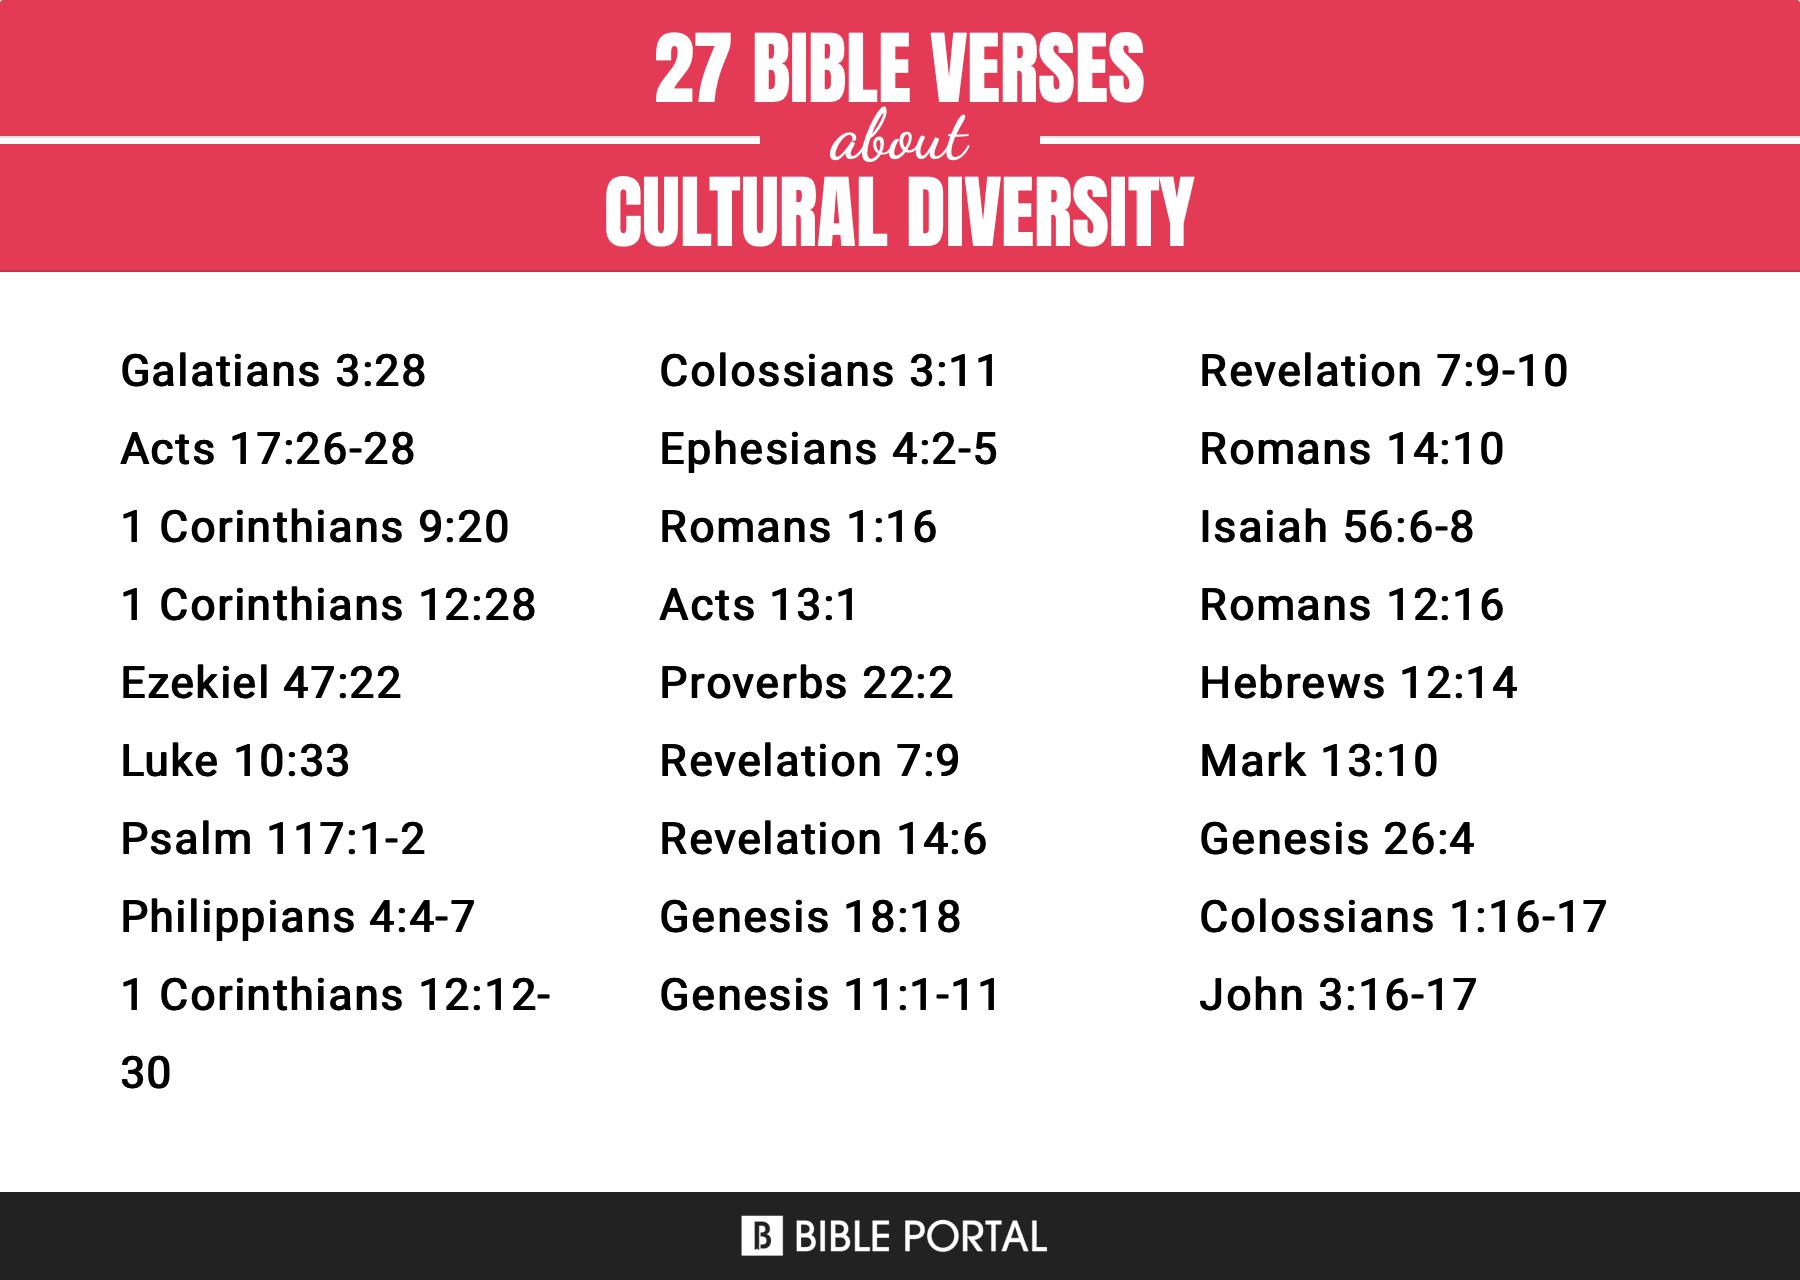 [Top] Más de 22 versículos de la Biblia sobre la diversidad cultural.